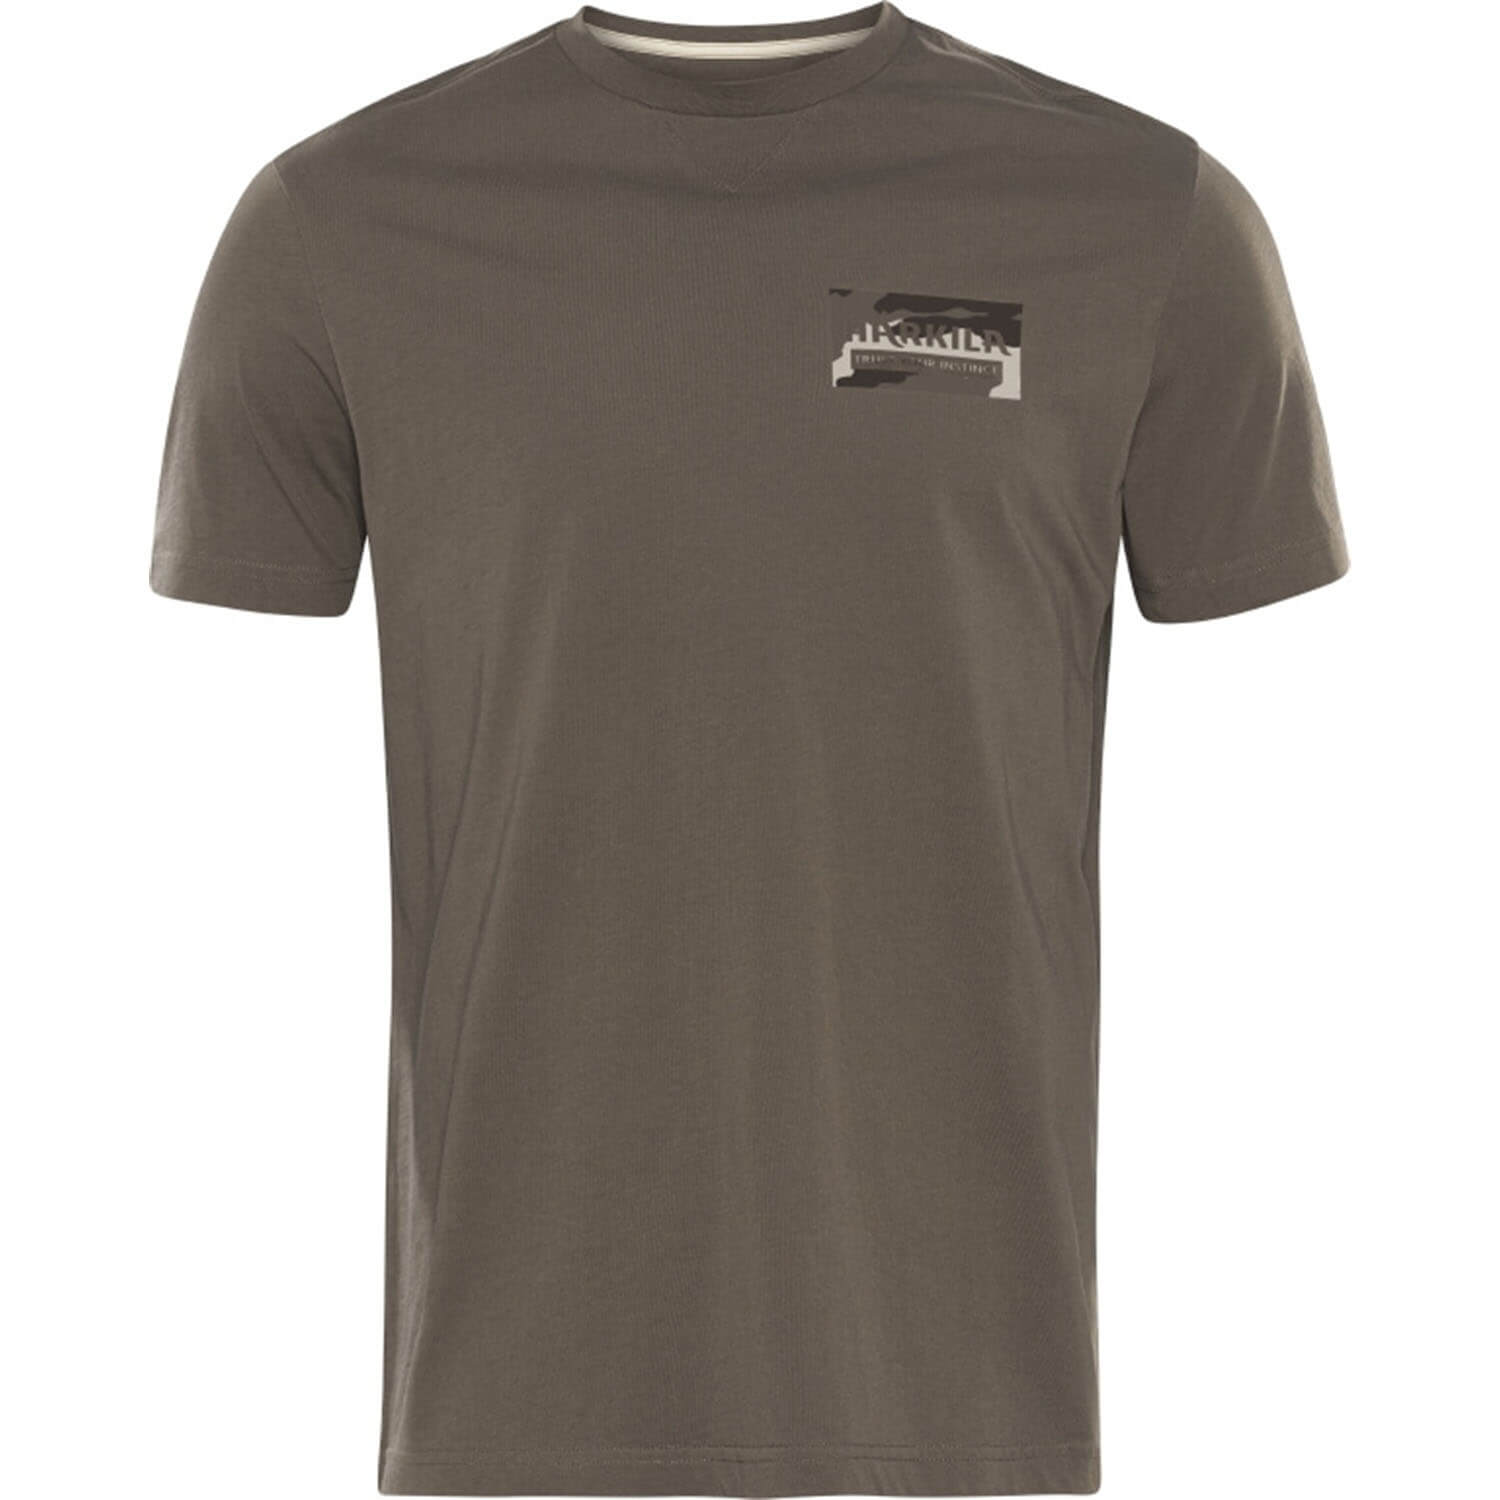 Härkila T-Shirt Core (Braun) - Hemden & Shirts